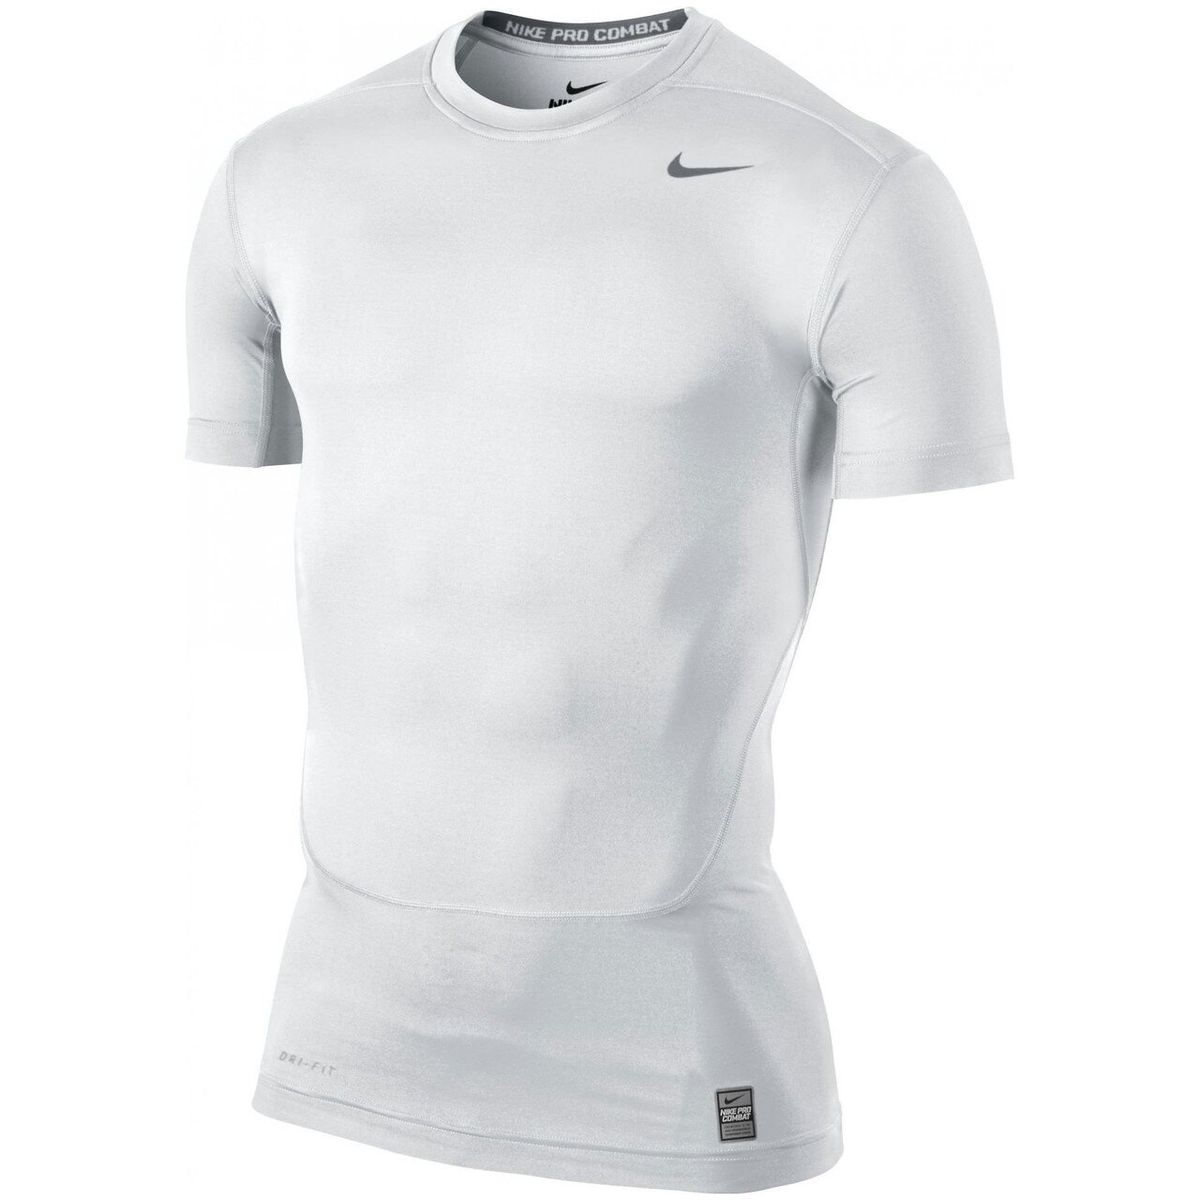 Компрессионная футболка Nike Pro Combat Core Compression SS 2.0 Top (449792-100), S